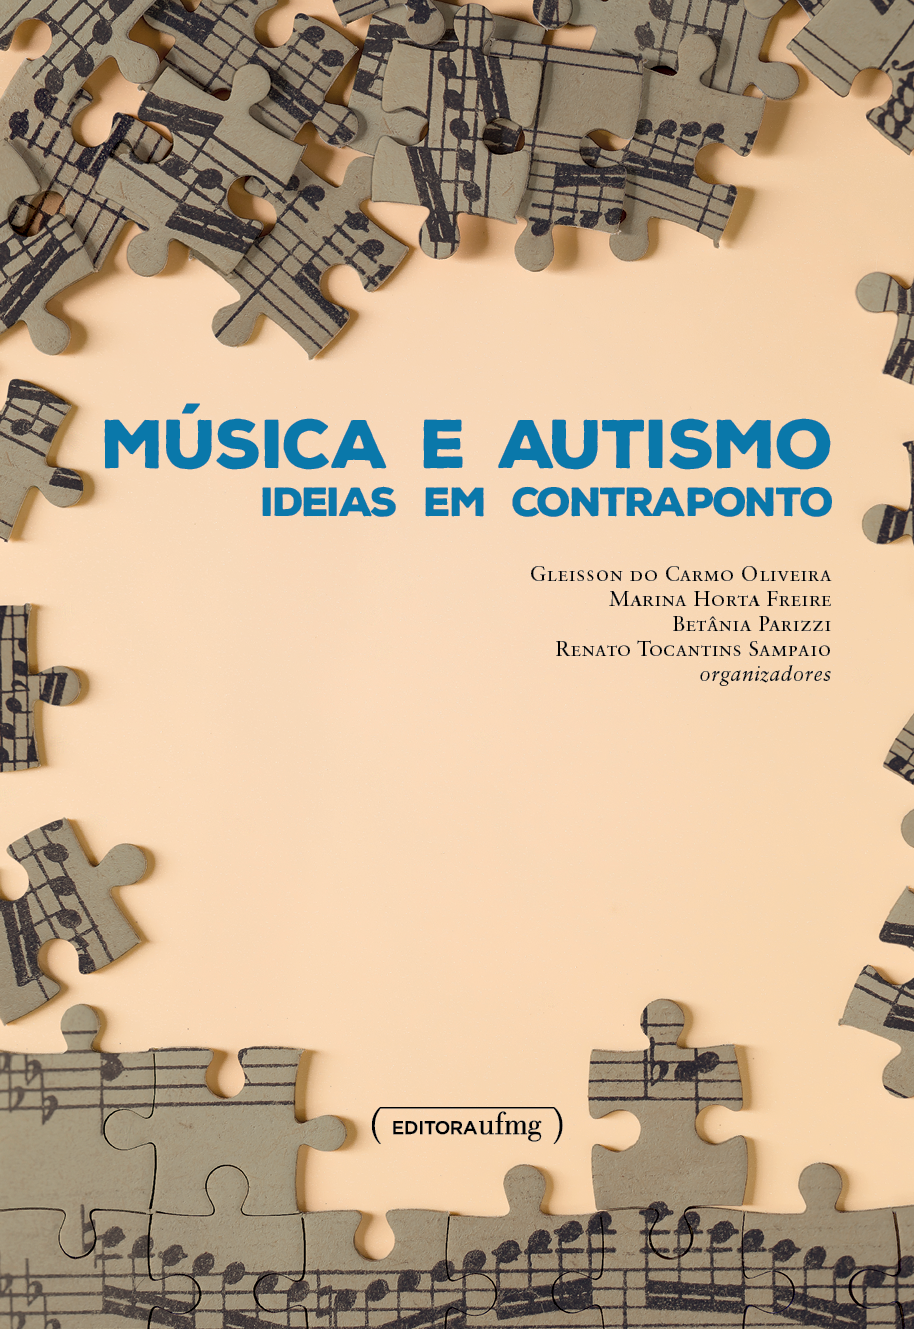 Livro 'Música e autismo', que acaba de ser publicado pela Editora UFMG